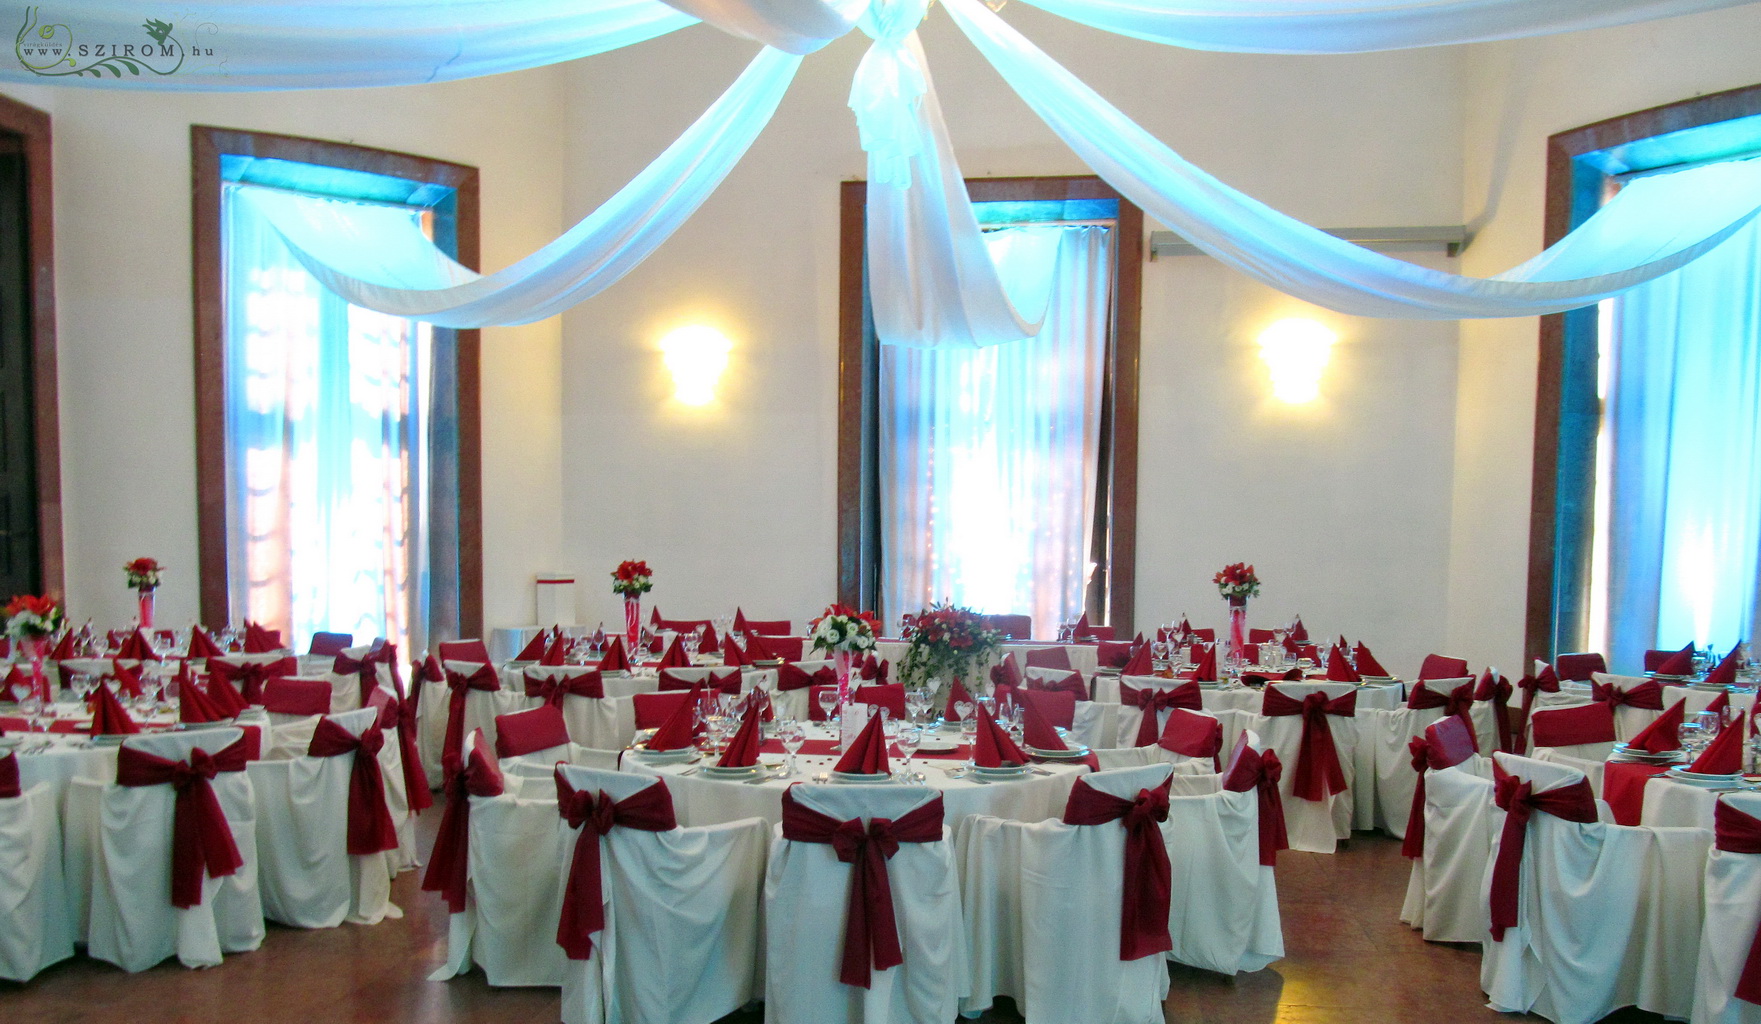 Virágküldés Budapest - Vörös liliomos asztaldísz 1db, Savoyai kastély, esküvő